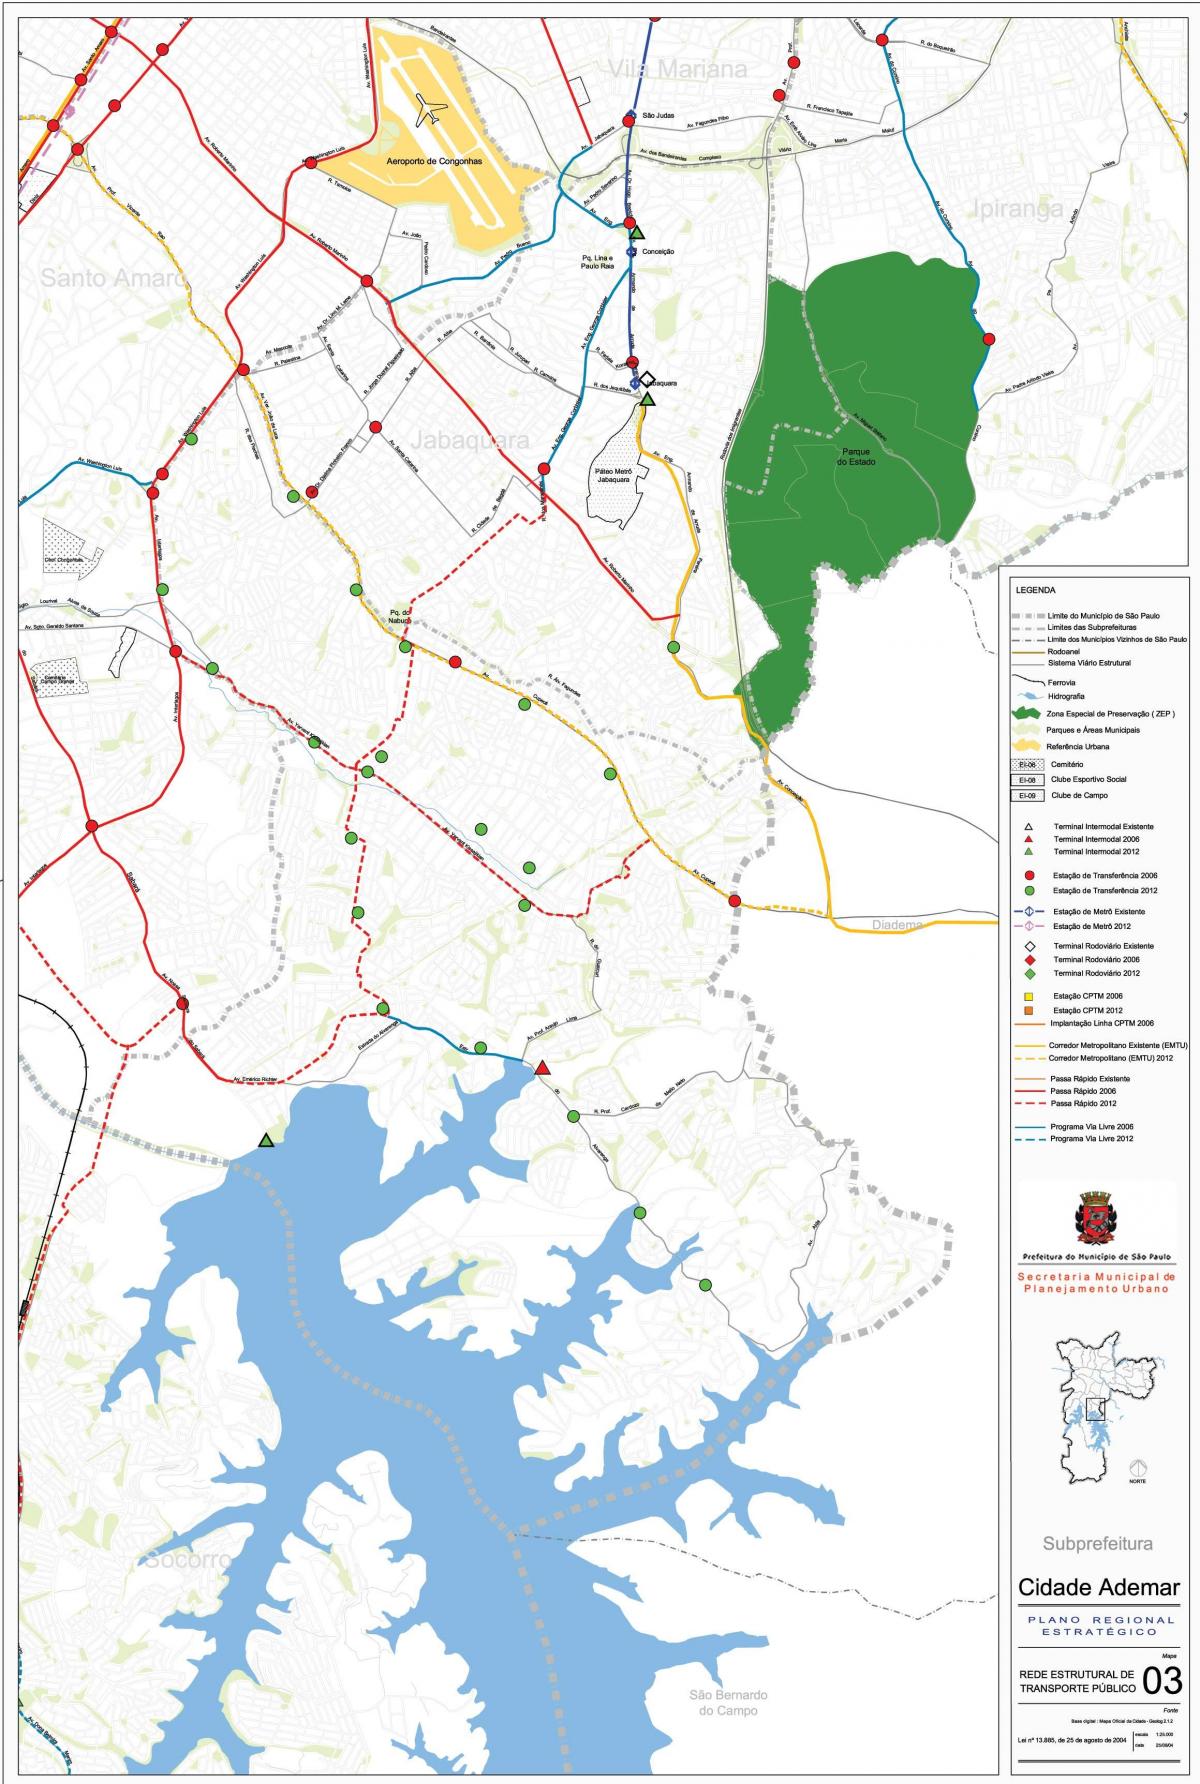 Mapa Cidade Ademar São Paulo - Veřejné dopravě